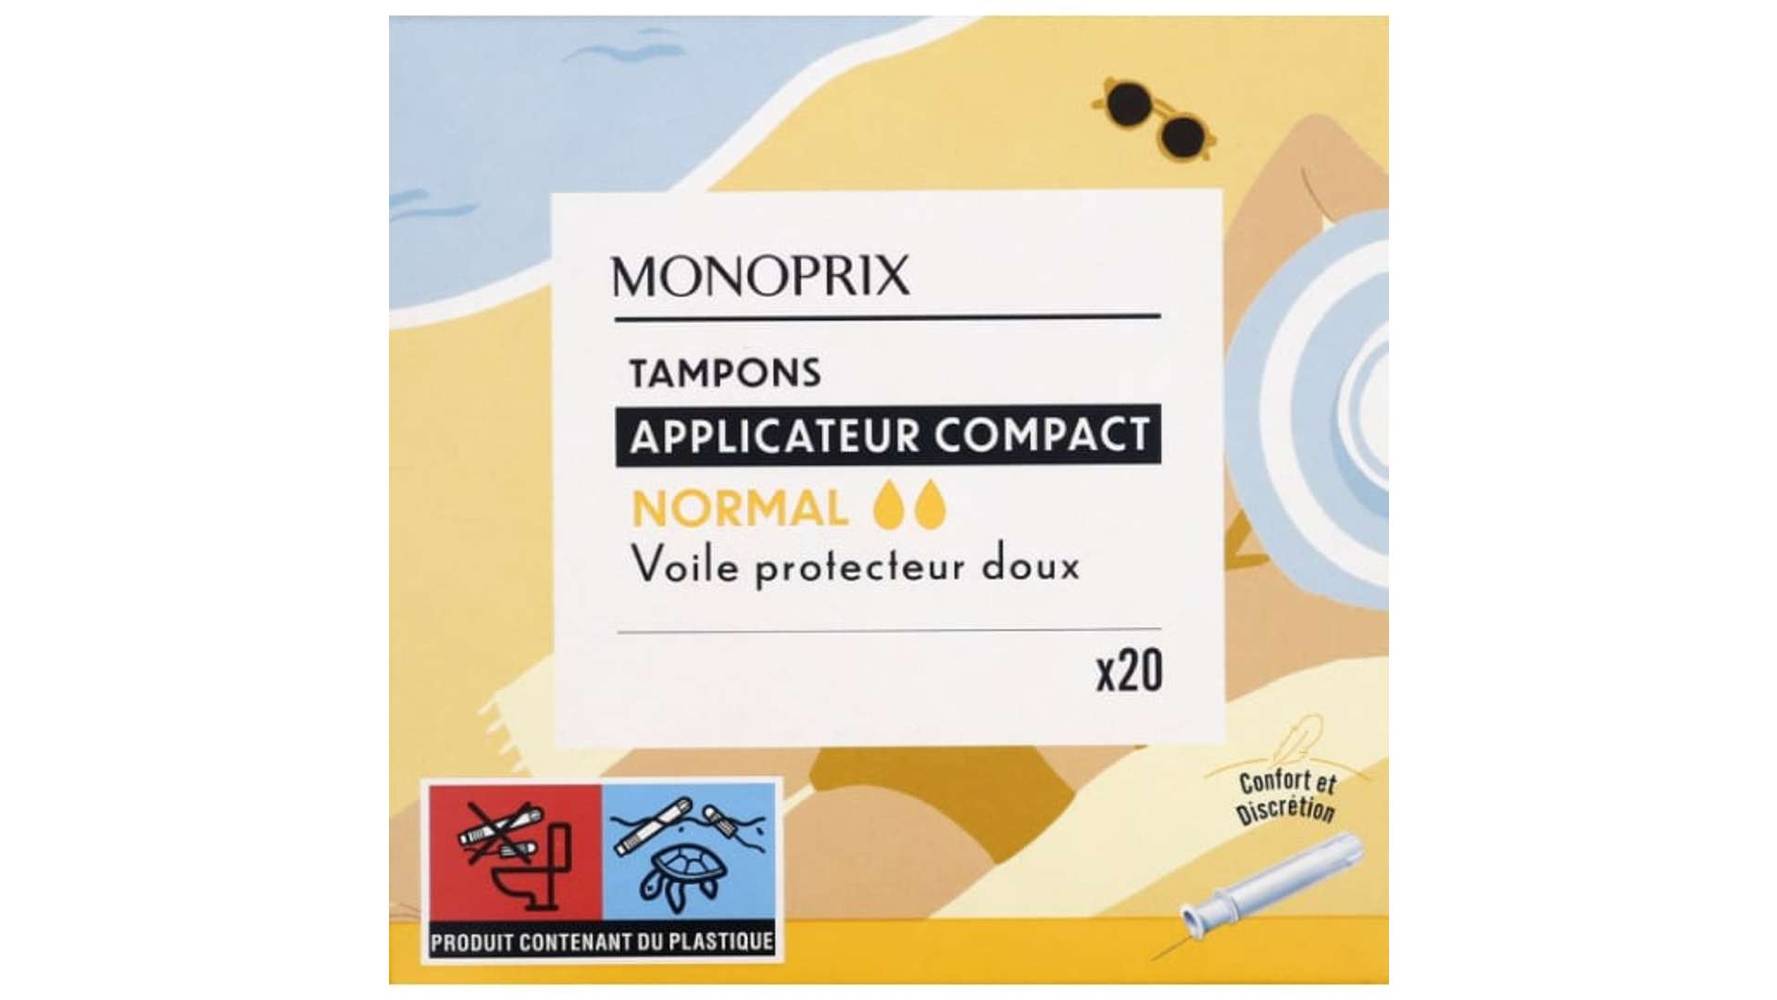 Monoprix - Tampons normal avec applicateur compact (female)